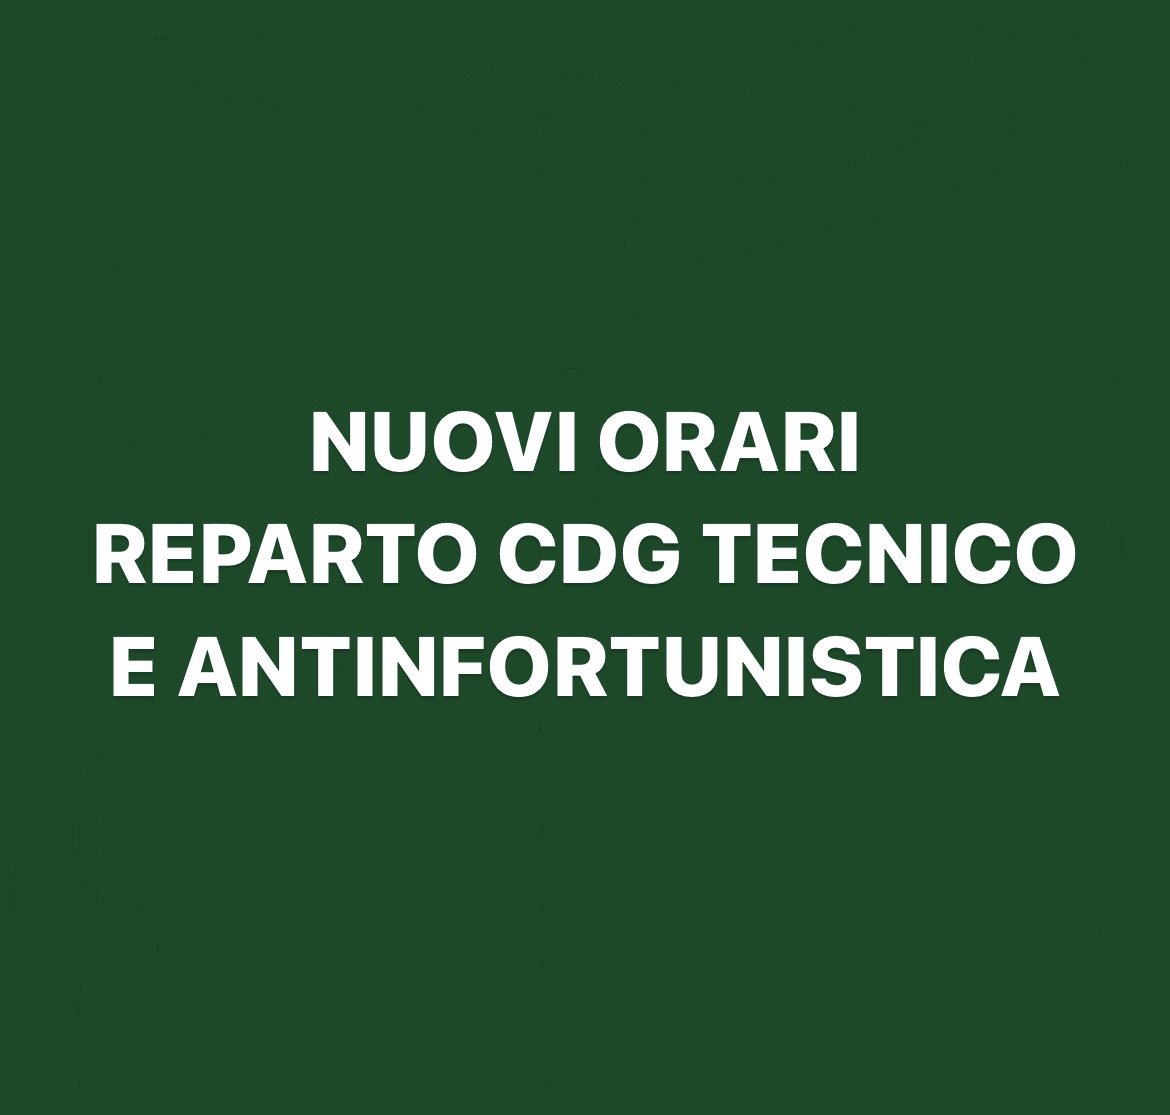 NUOVI ORARI REPARTO TECNICO-ANTINFORTUNISTICA